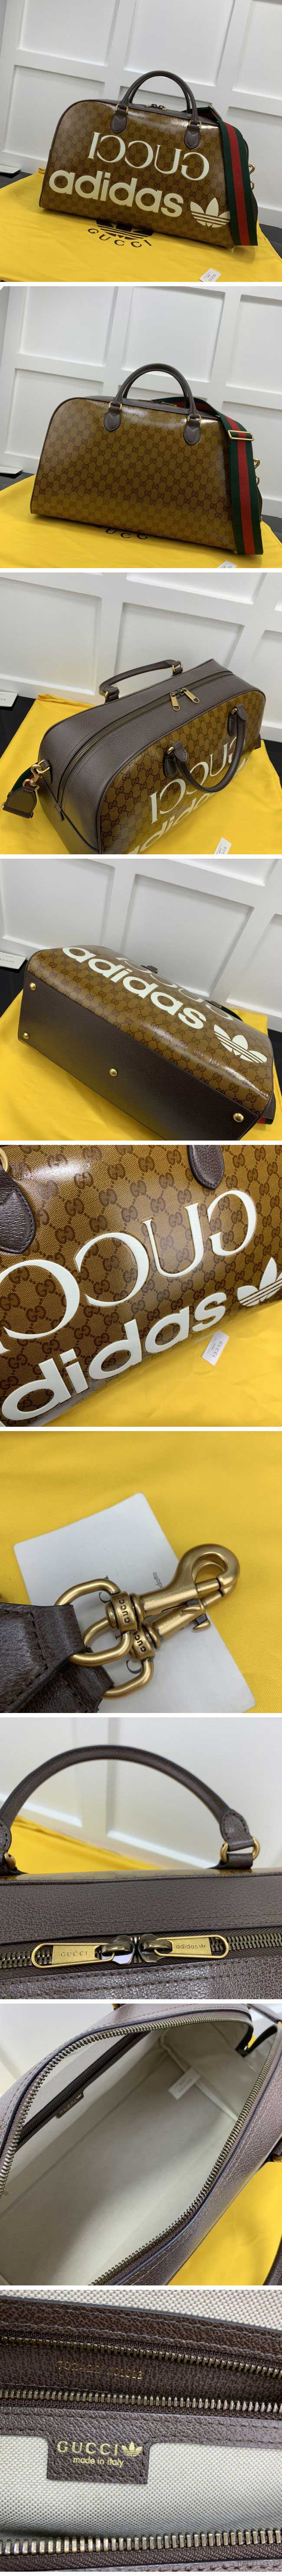 Gucci x Adidas Print Travel Bag Large GG Supreme グッチ x アディダス プリント トラベルバッグ ラージ GGスプリーム【N級】